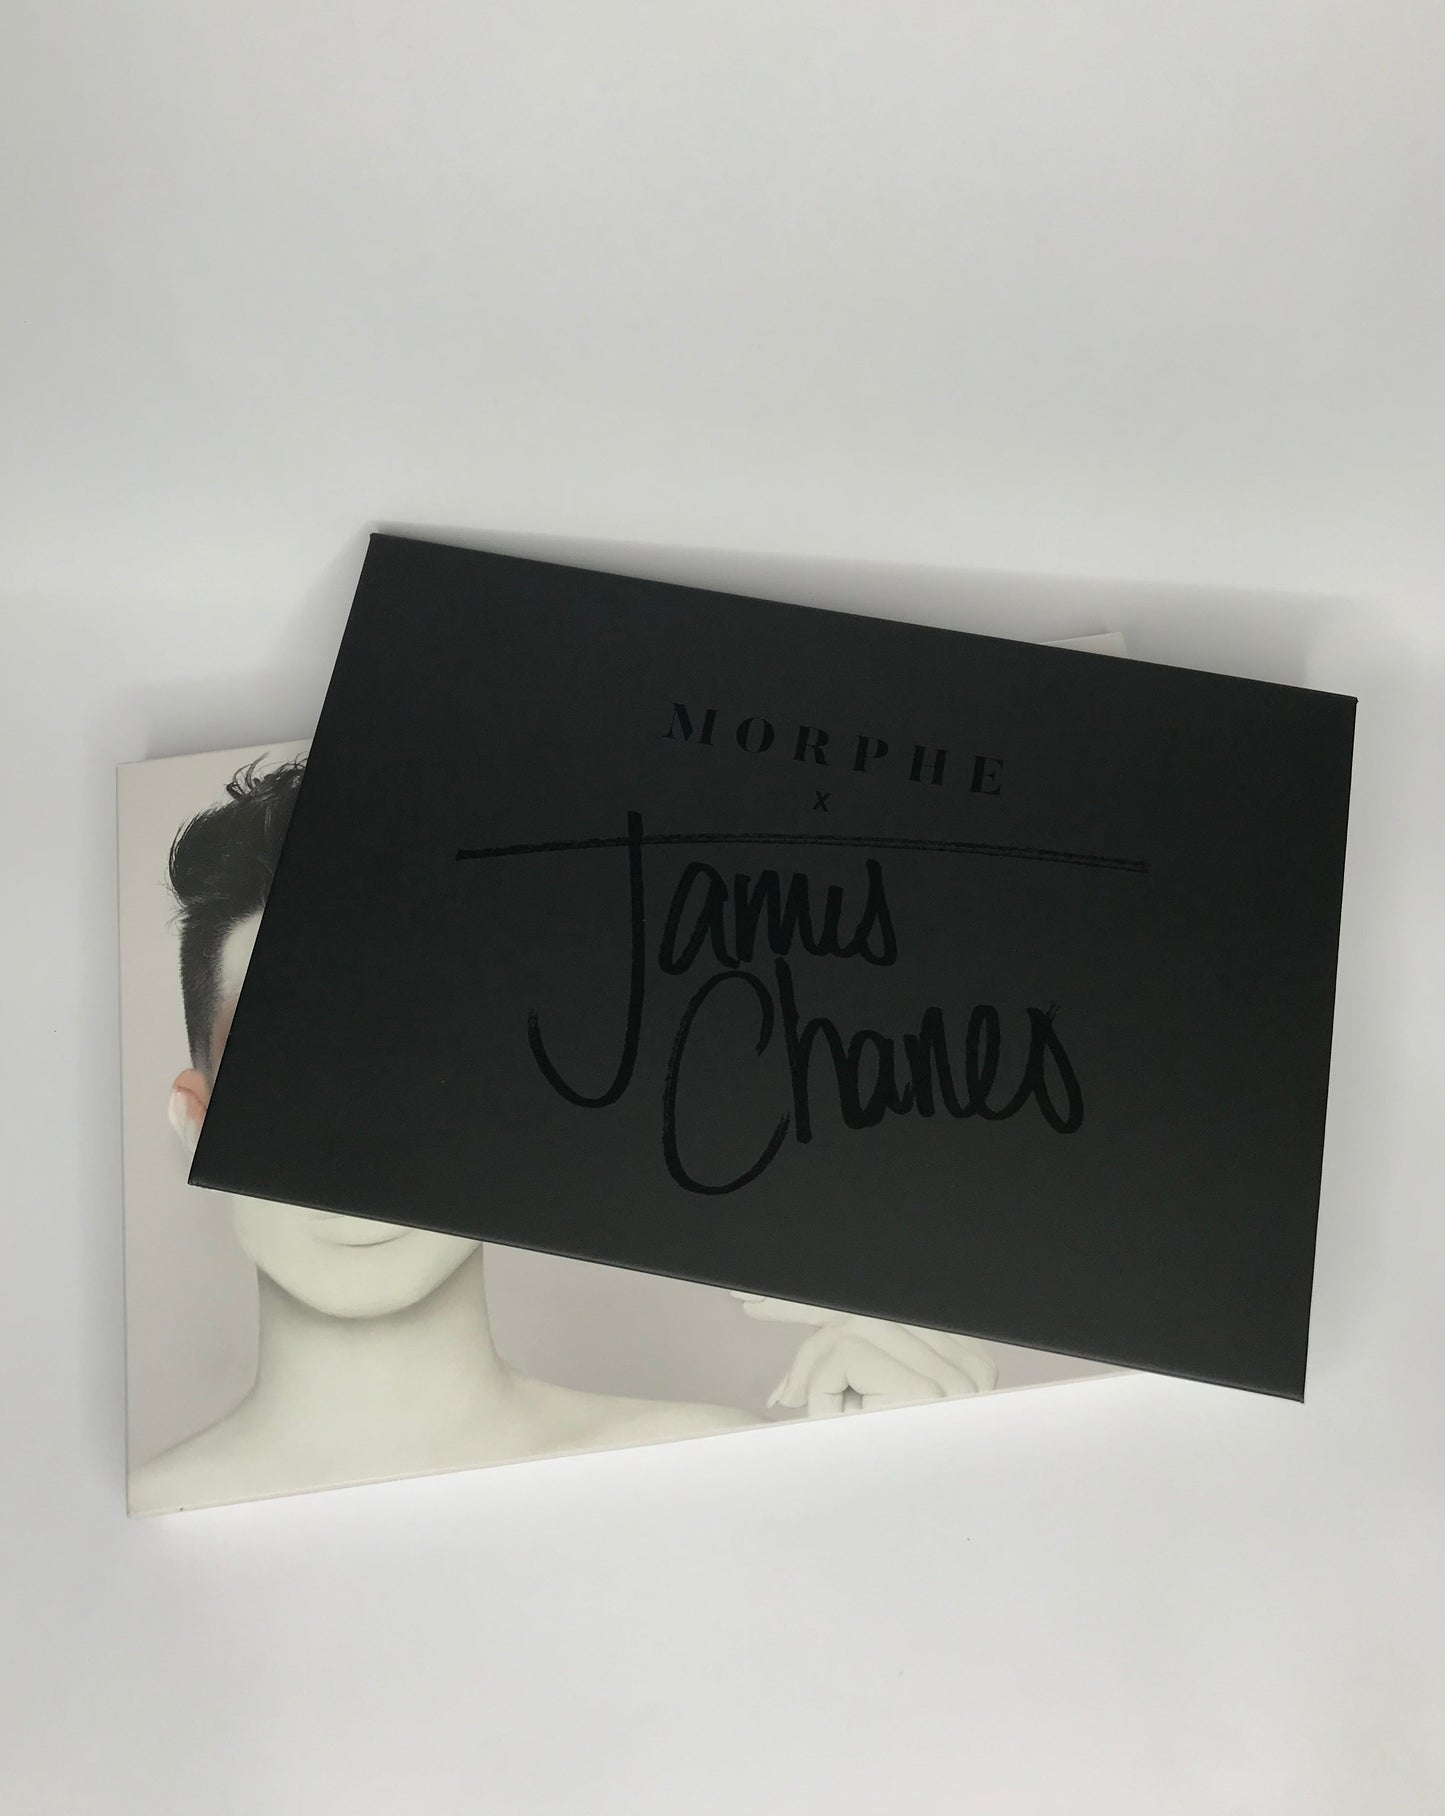 THE JAMES CHARLES Palette - Morphe